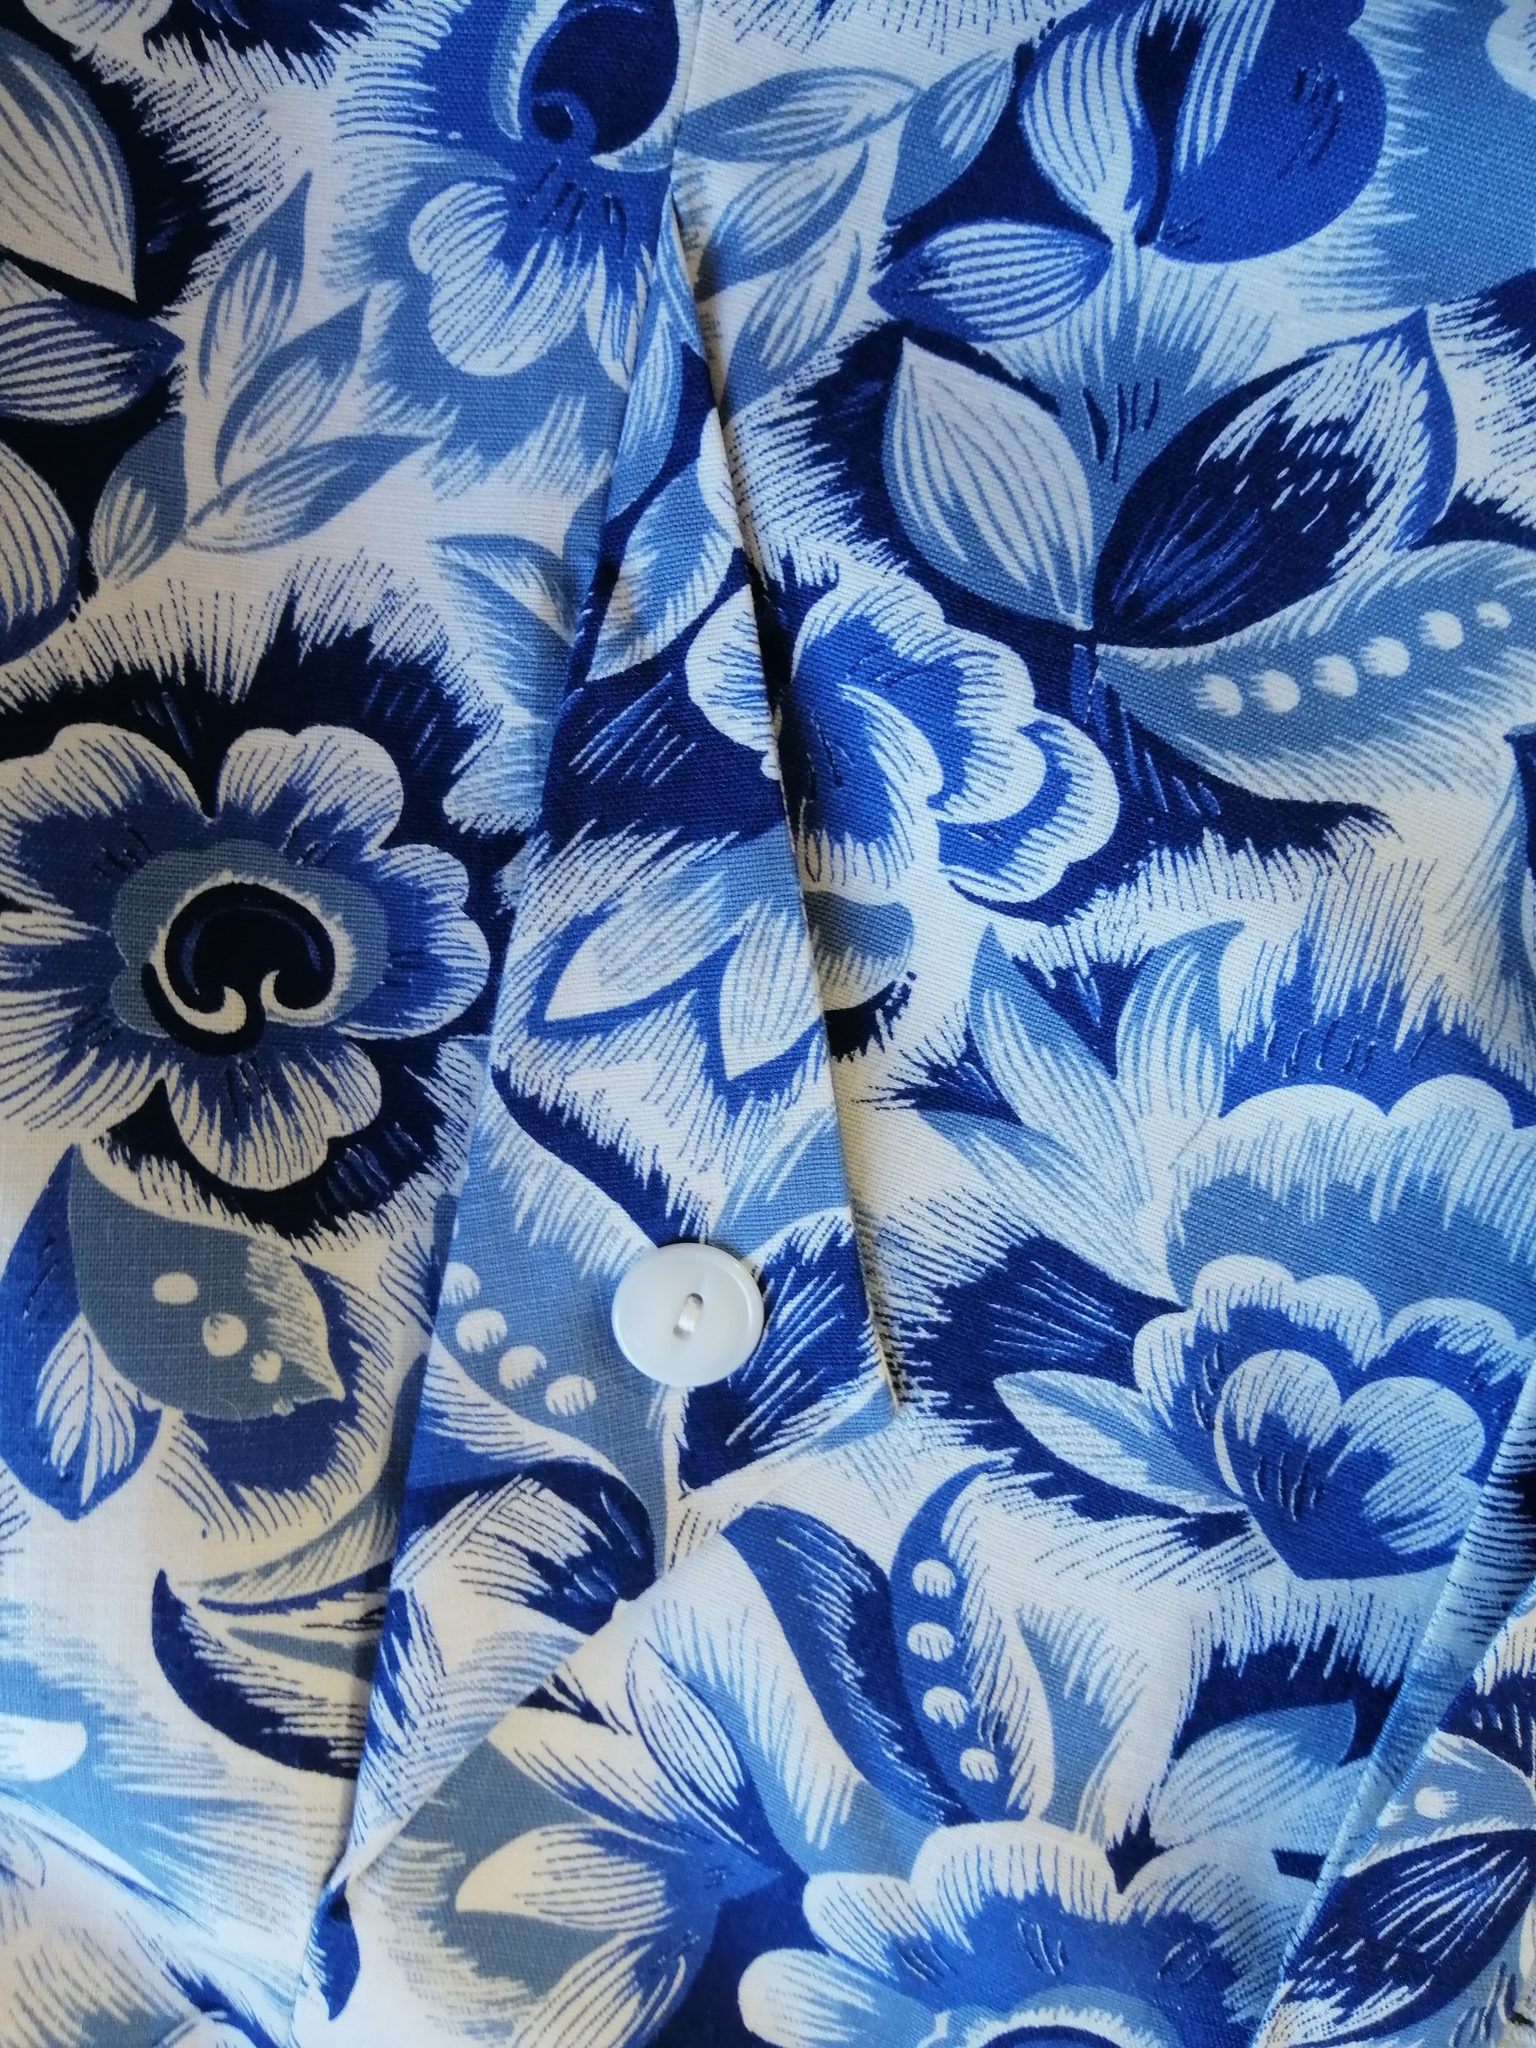 Vintage bomullsklänning 50-tal vit med blå blommor vid kjol fickor skärp